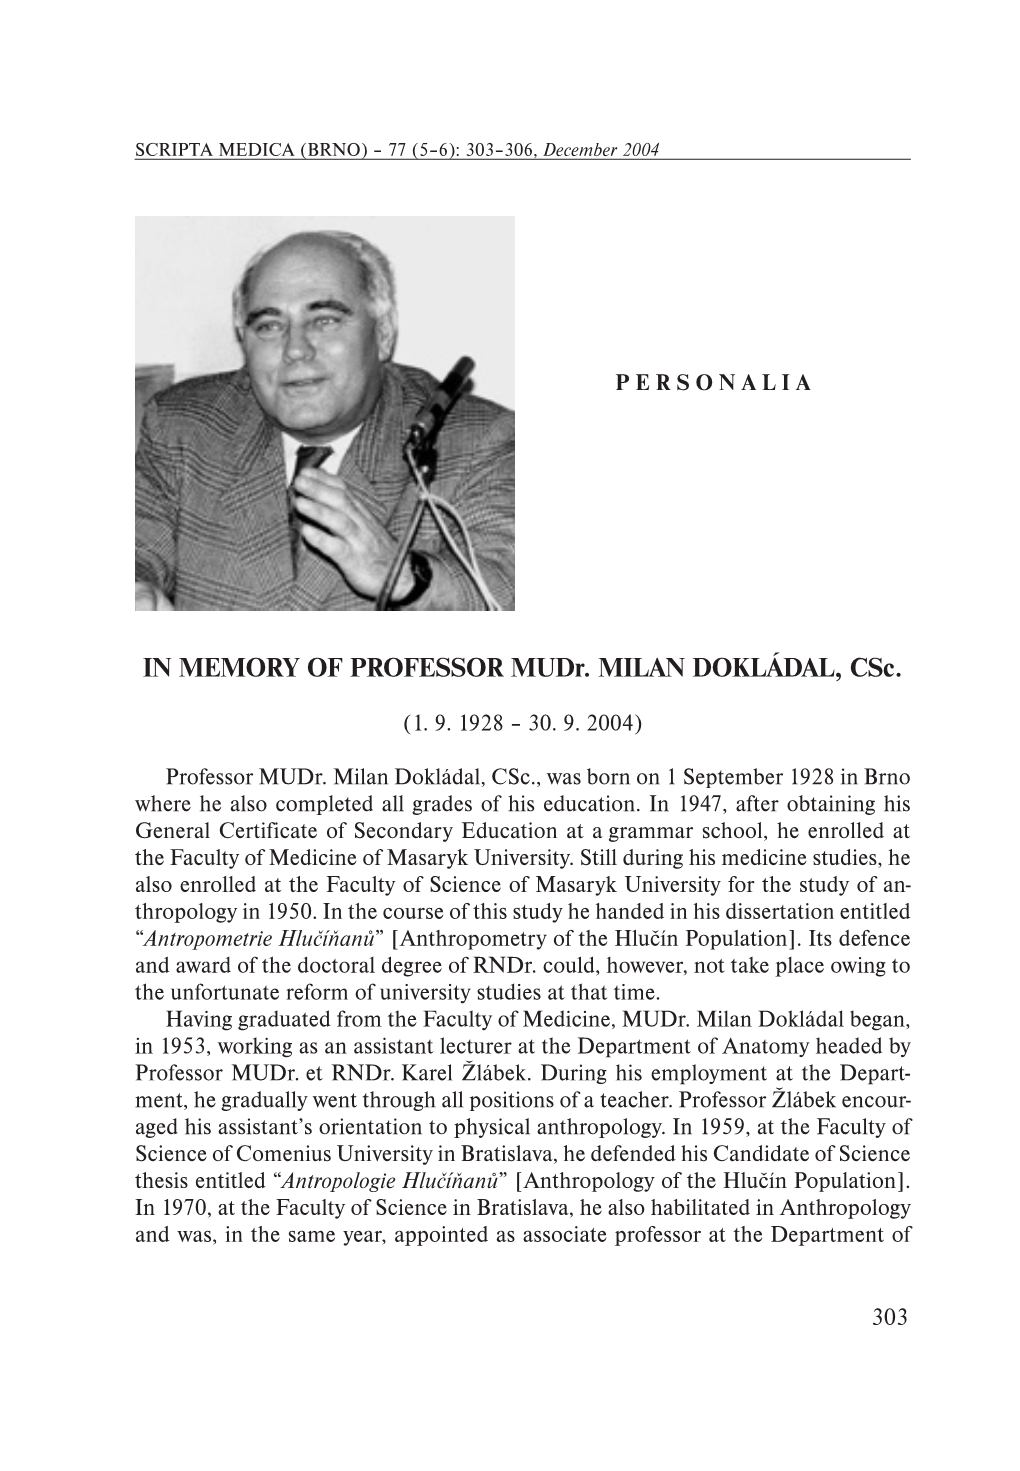 IN MEMORY of PROFESSOR Mudr. MILAN DOKLÁDAL, Csc